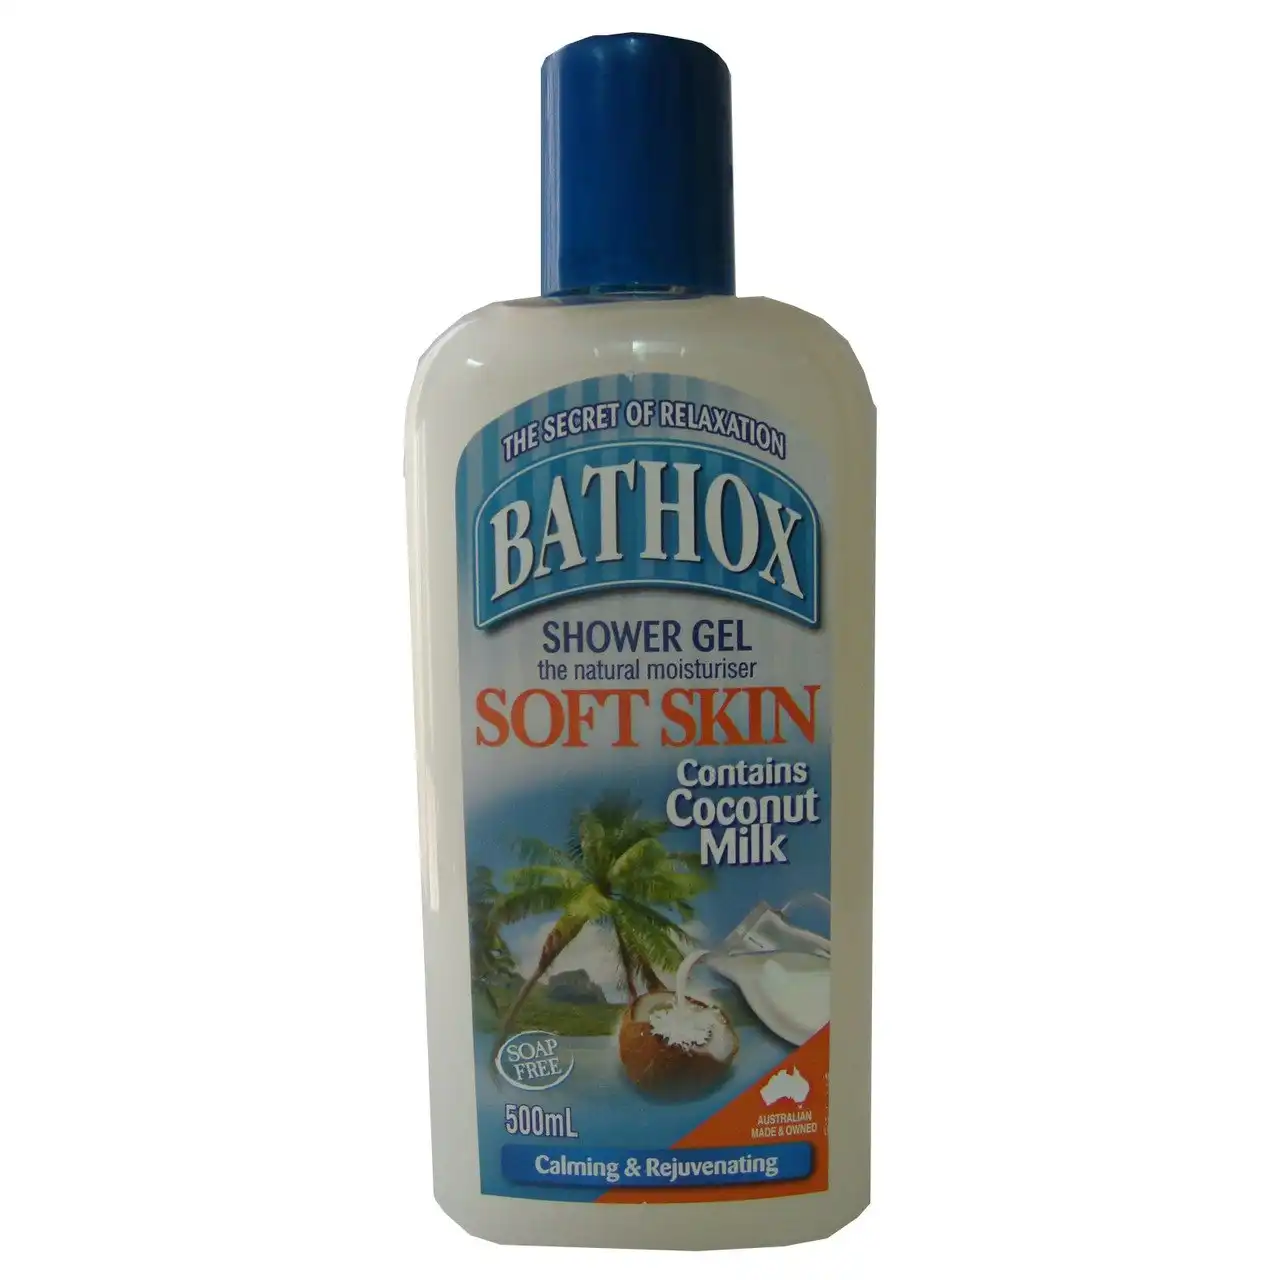 Bathox Shower Gel & Bath Foam Coconut Soft Skin 500ml